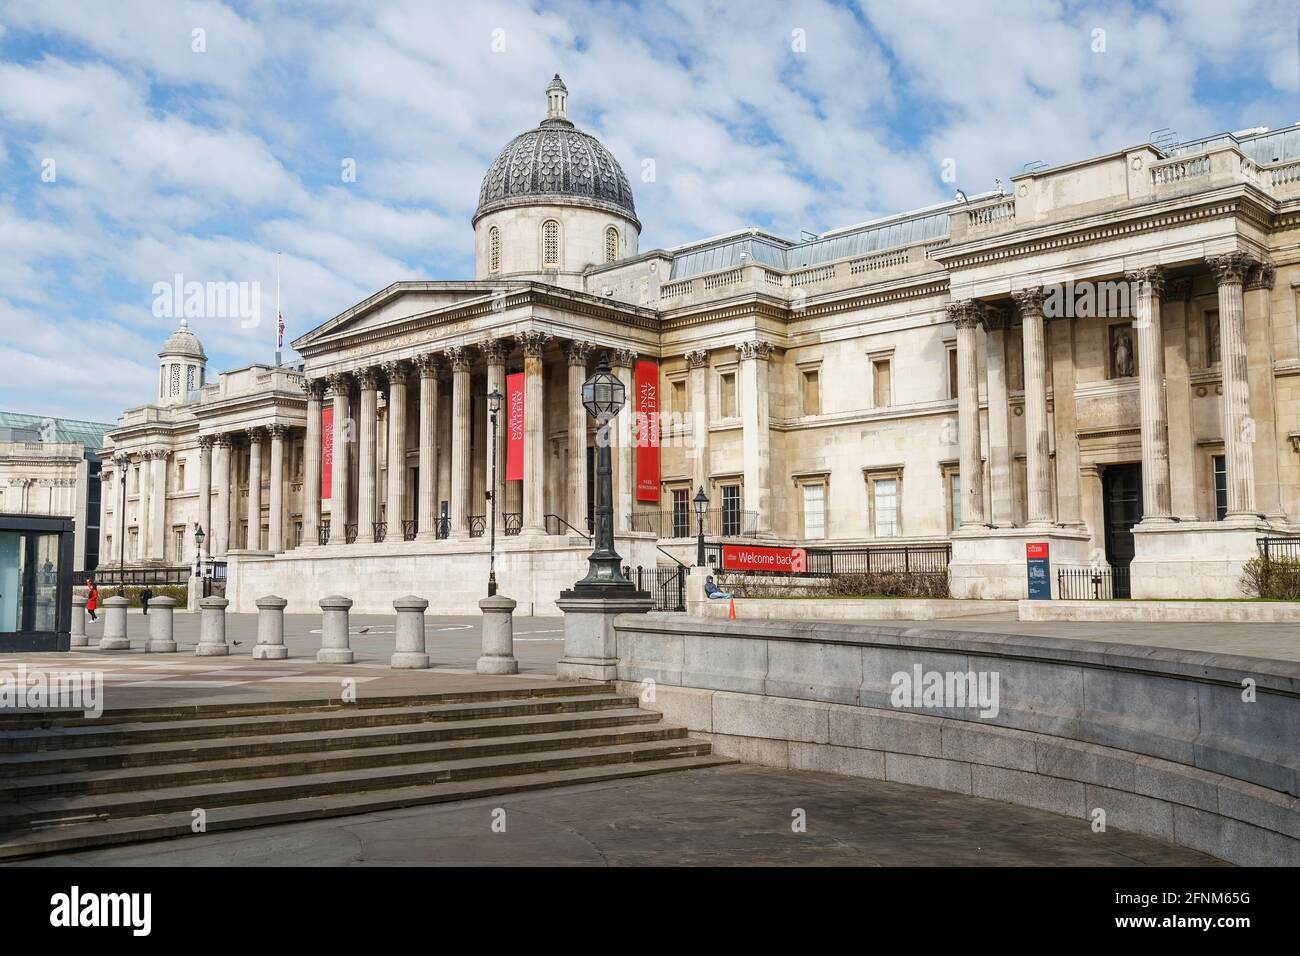 Deux personnes à l'extérieur de la Galerie nationale ont pris de Trafalgar Square. Une personne assise sur un mur portant un masque facial, l'autre marchant. Banque D'Images